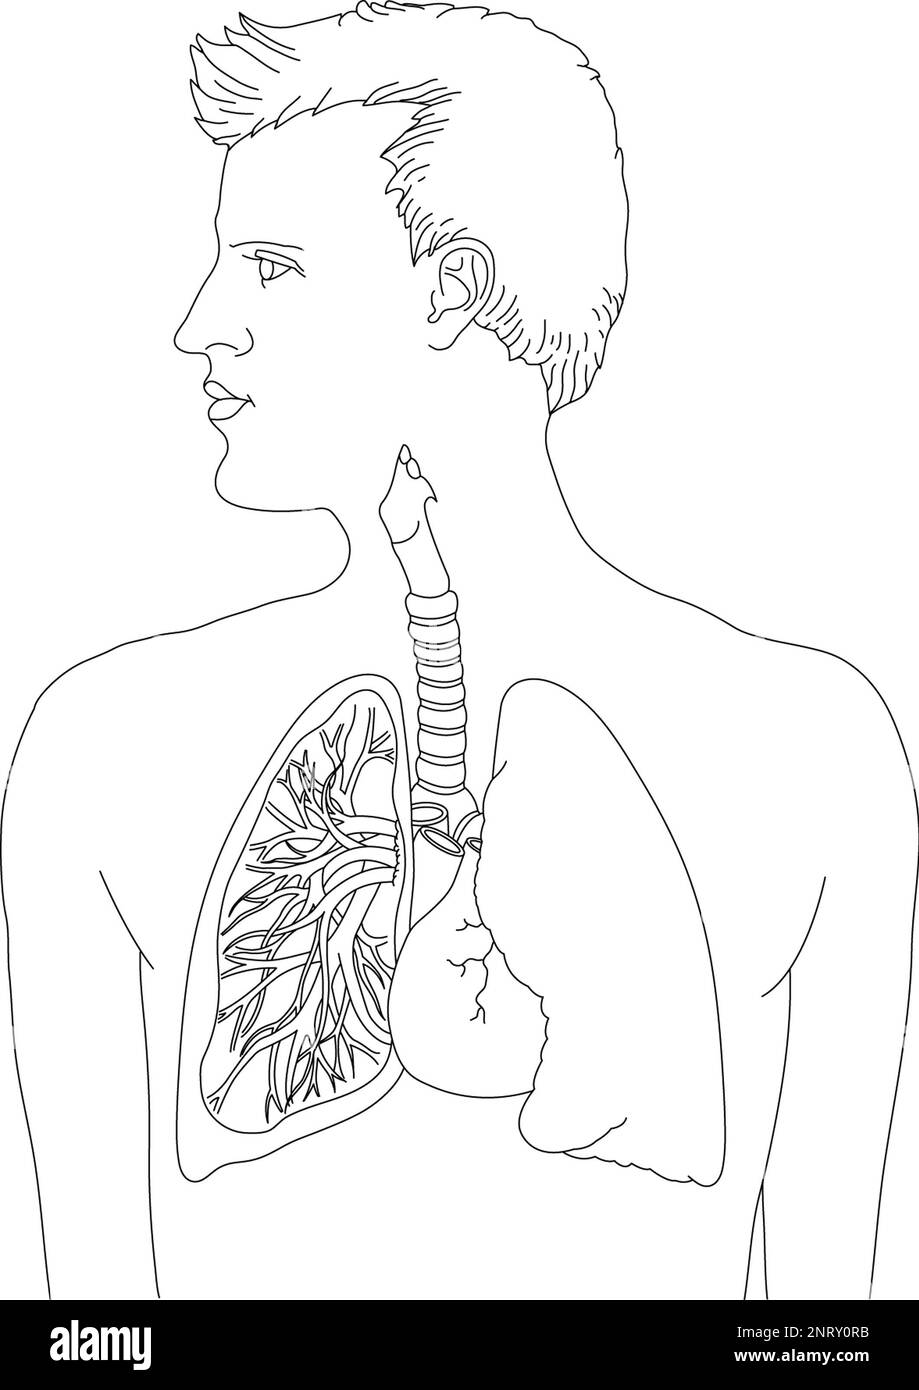 Schwarz-weiße medizinische Linienzeichnung, die einen Mann in Profil, Lunge und Atmungssystem zeigt, abgebildet sind linke Bronchien, Herz, Luftröhre (Luftröhre), & Lungen. Stockfoto